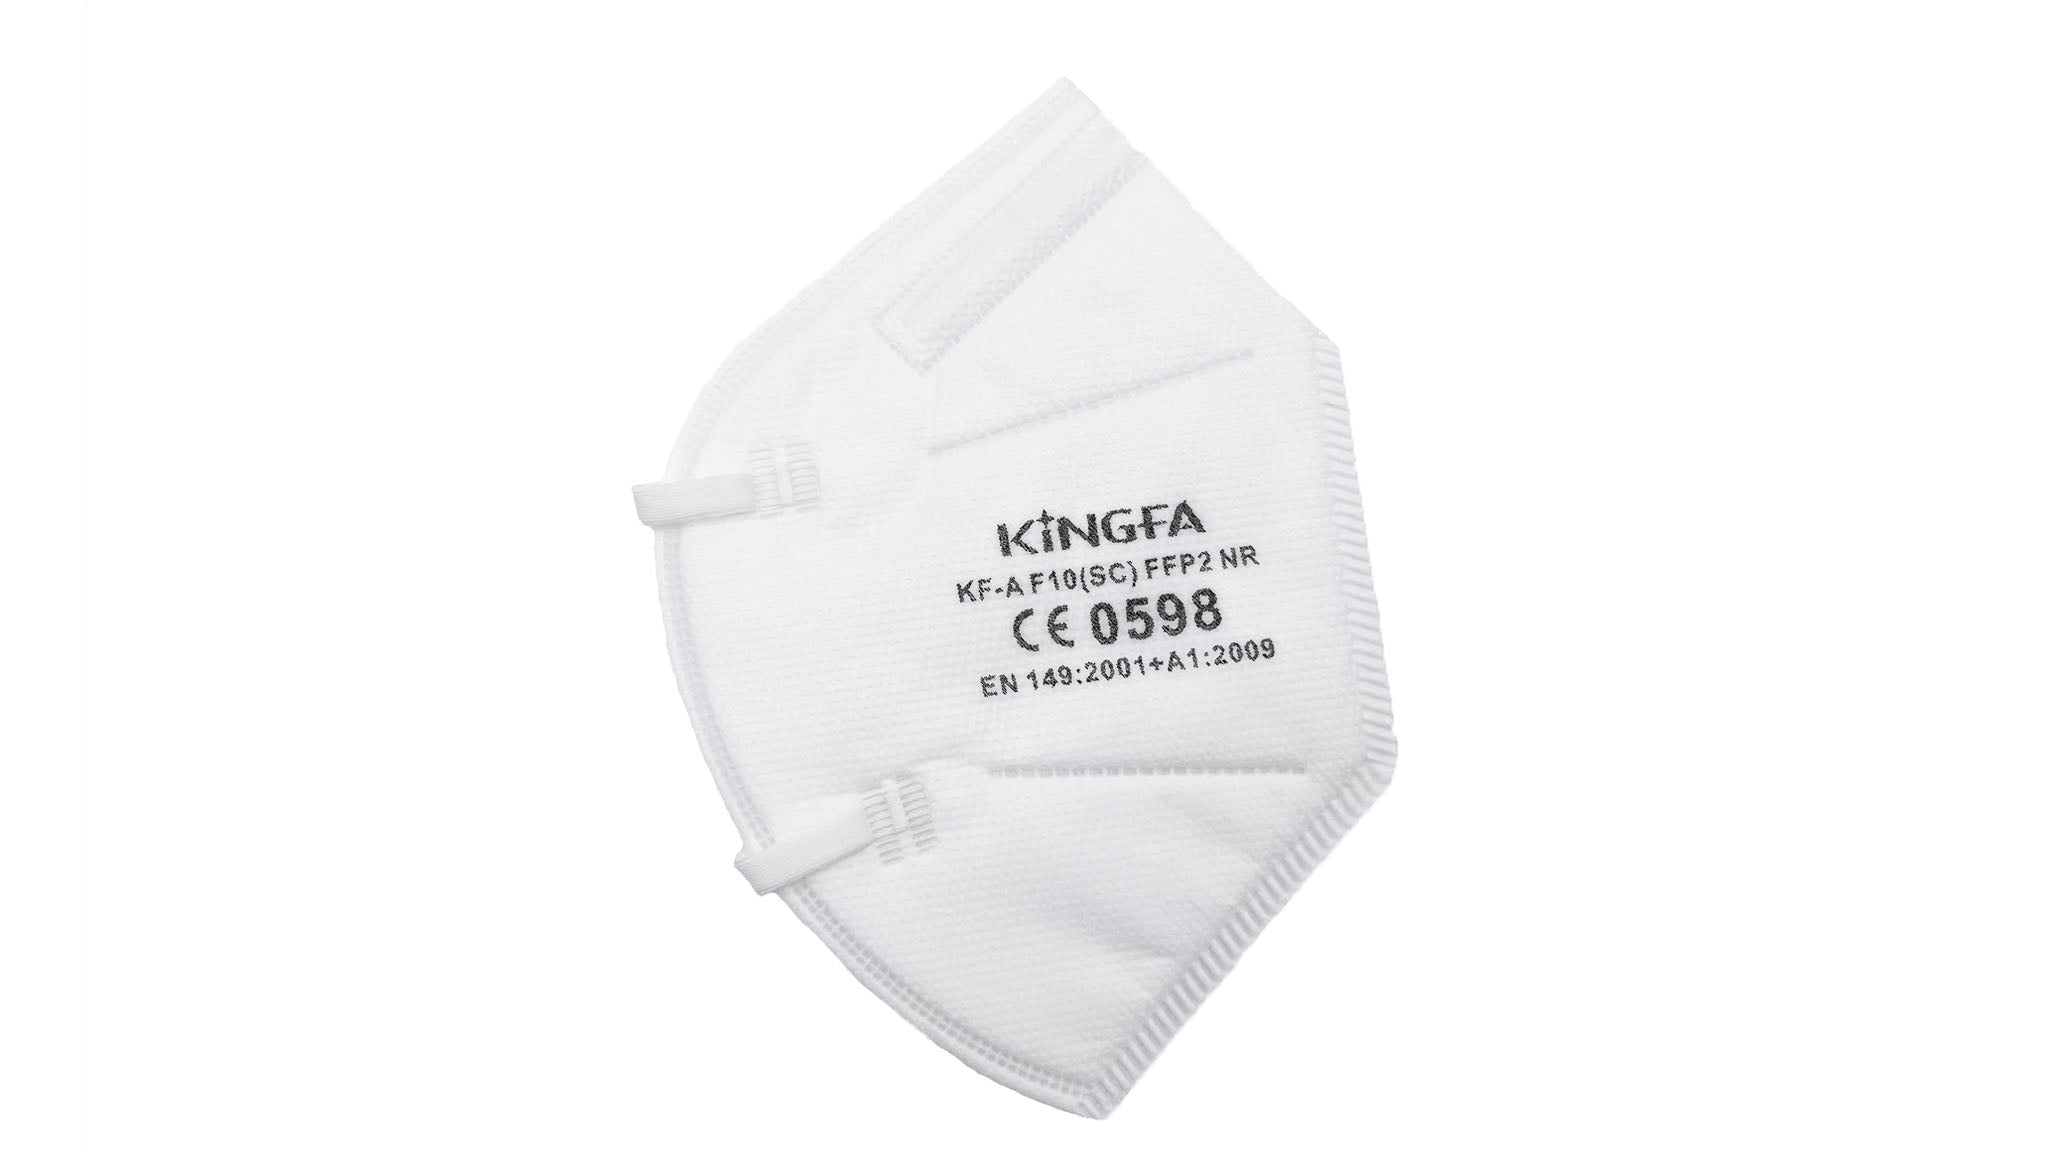 Kingfa FFP2 Masken einzeln eingeschweißt (6 Masken je Box) - weiß/schwarz